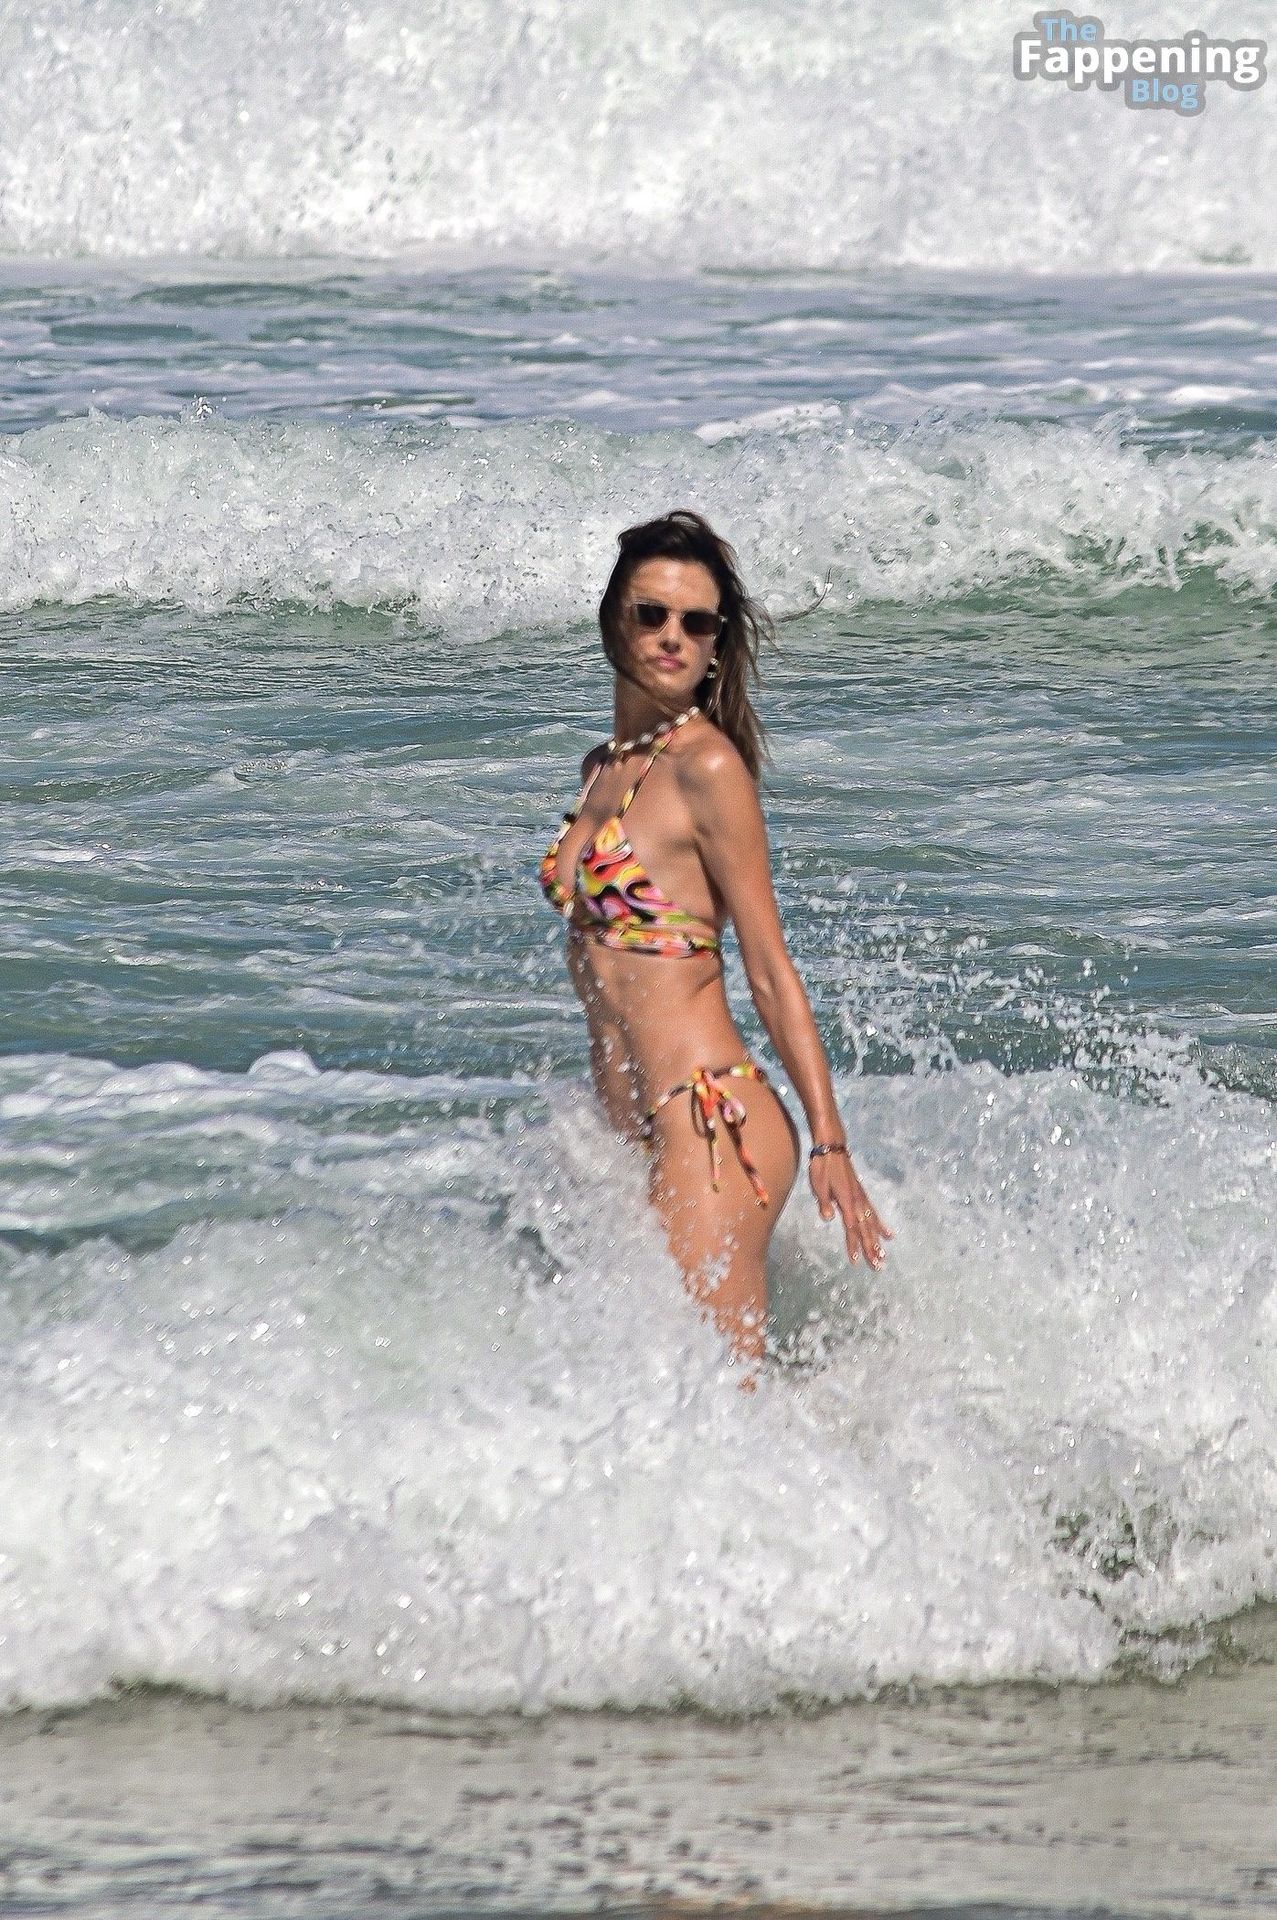 Alessandra-Ambrosio-Beach-Bombshell-Paparazzi-Shots-12-thefappeningblog.com_.jpg